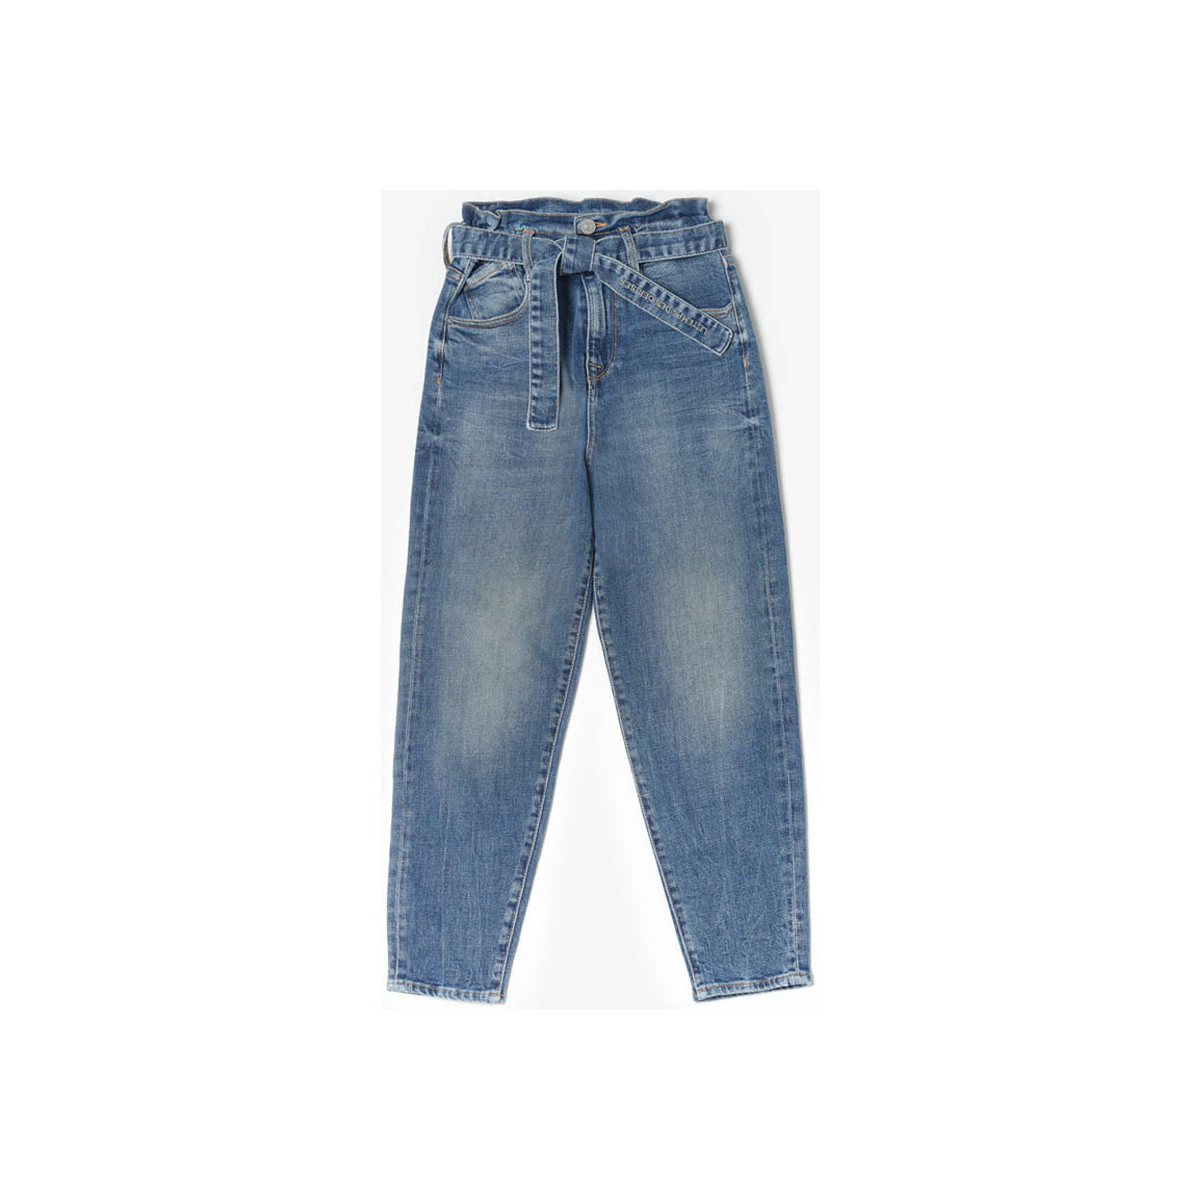 Le Temps des Cerises Bleu Milina boyfit jeans vintage b